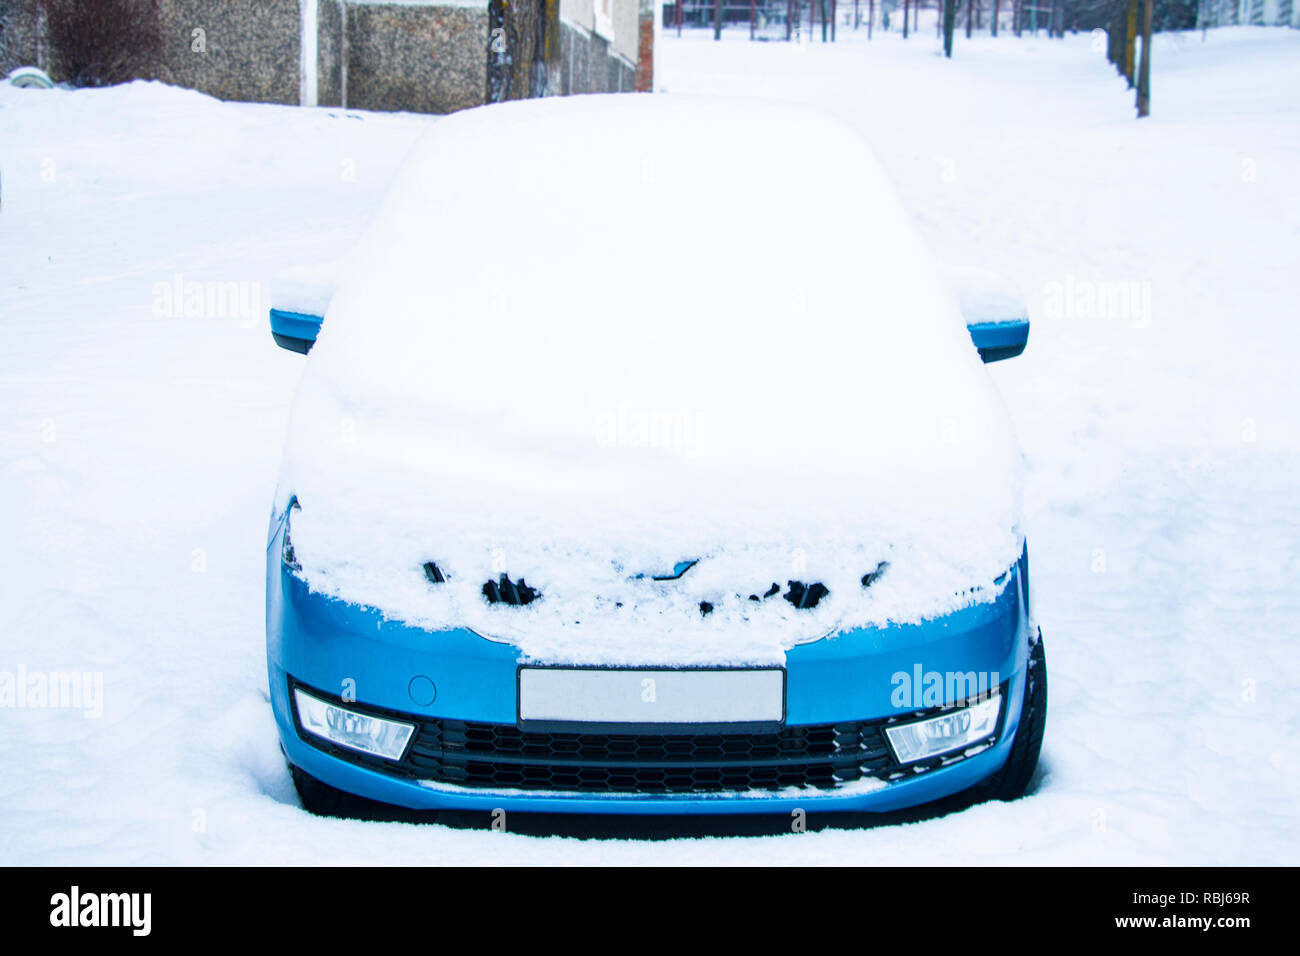 Gefrorene Auto im Winter Schnee bedeckte, Ansicht frontscheibe  Windschutzscheibe und Motorhaube auf verschneiten Hintergrund  Stockfotografie - Alamy